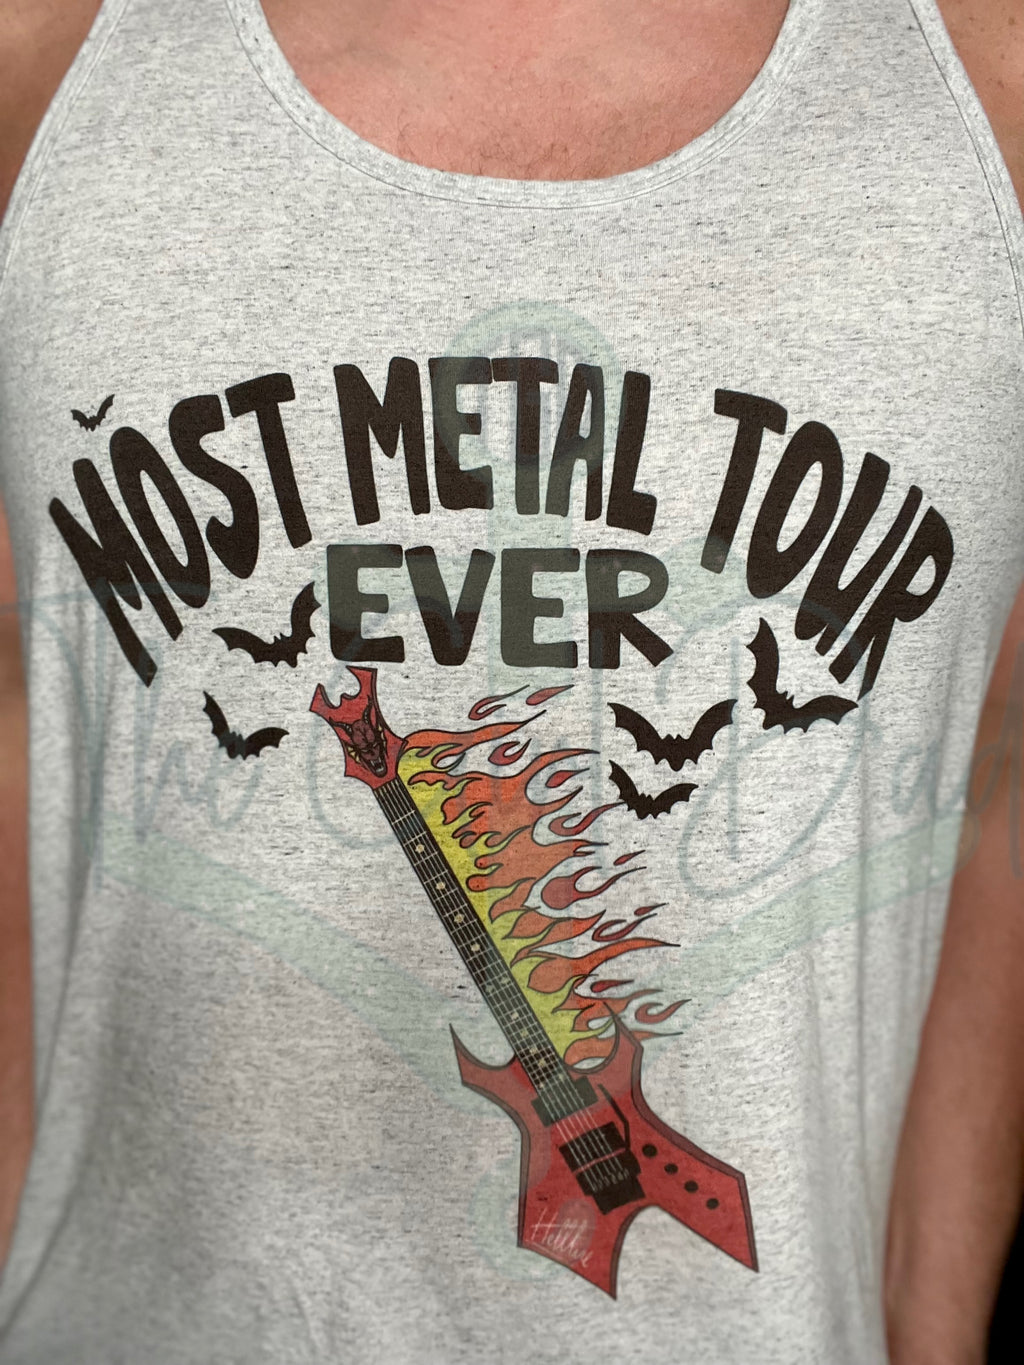 Most Metal Tour Ever Top Design